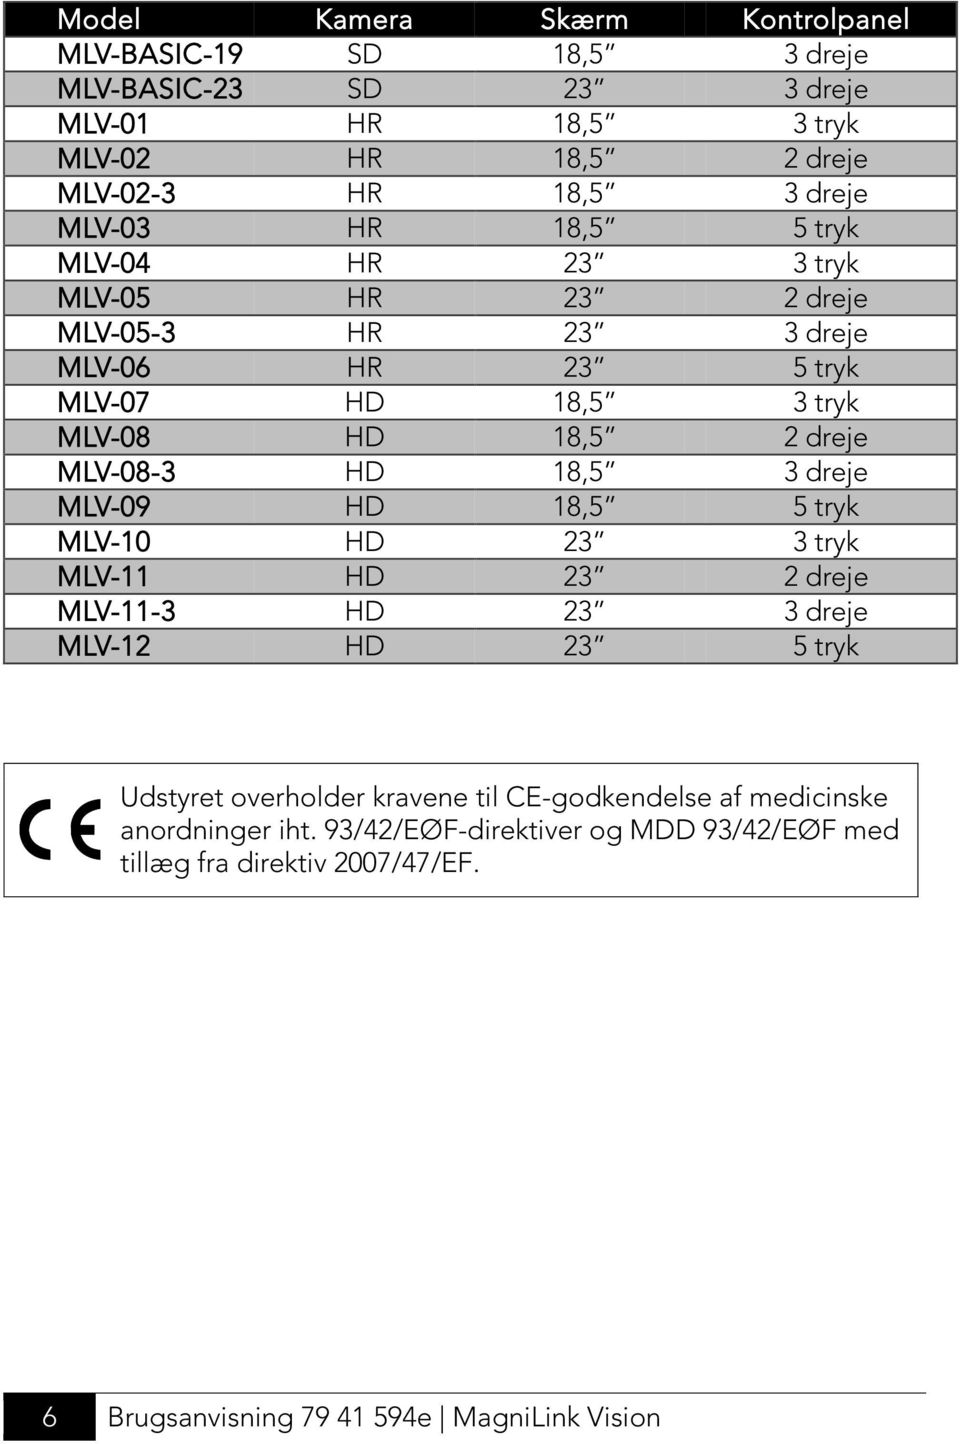 MLV-08-3 HD 18,5 3 dreje MLV-09 HD 18,5 5 tryk MLV-10 HD 23 3 tryk MLV-11 HD 23 2 dreje MLV-11-3 HD 23 3 dreje MLV-12 HD 23 5 tryk Udstyret overholder kravene